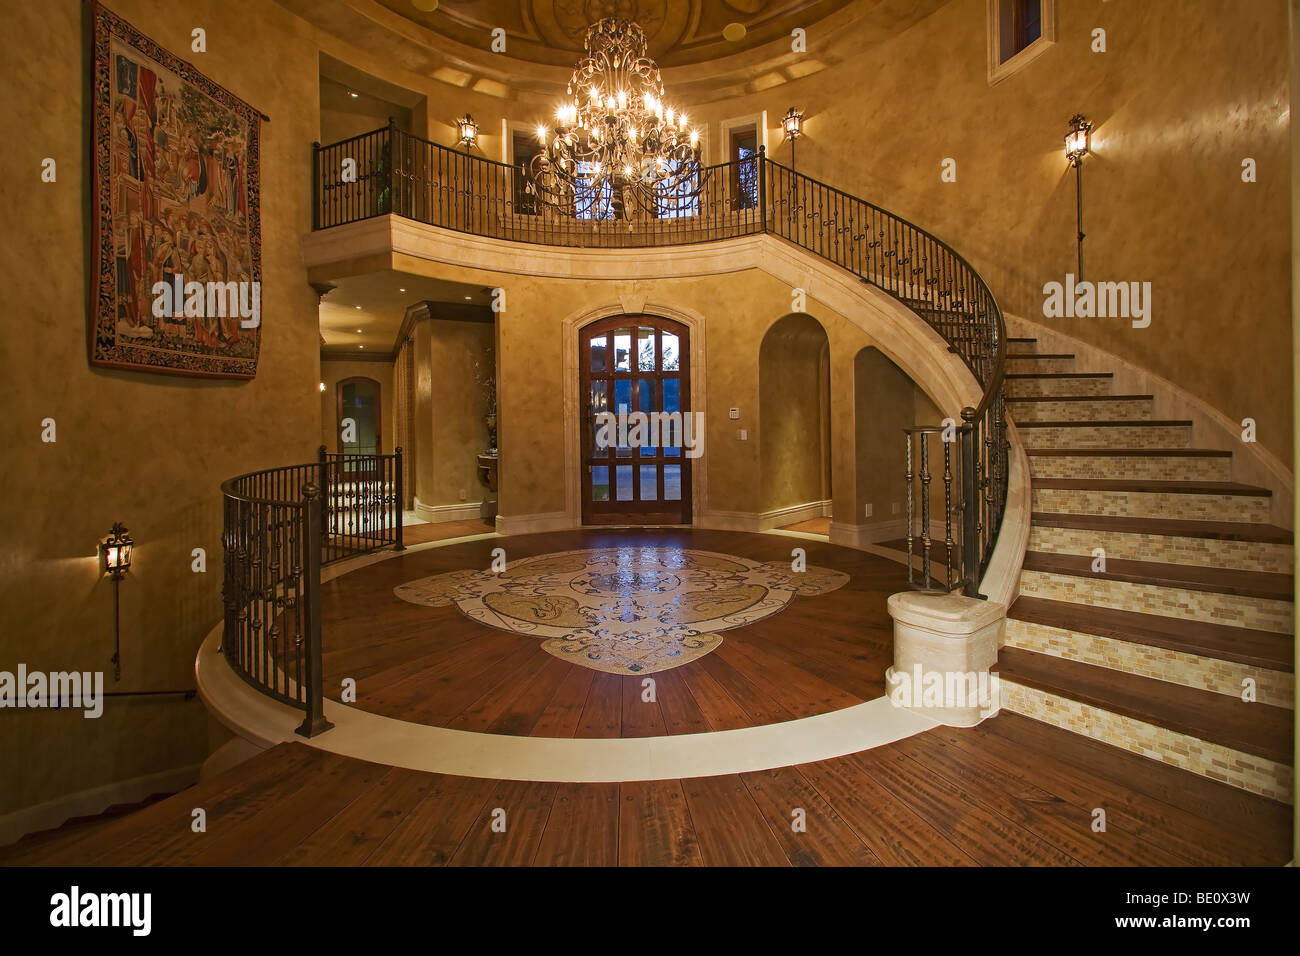 Atemberaubende faux-fertige Decke sieht man im großen Foyer mit geschwungene Treppe, Holzböden und große Kronleuchter Stockfoto